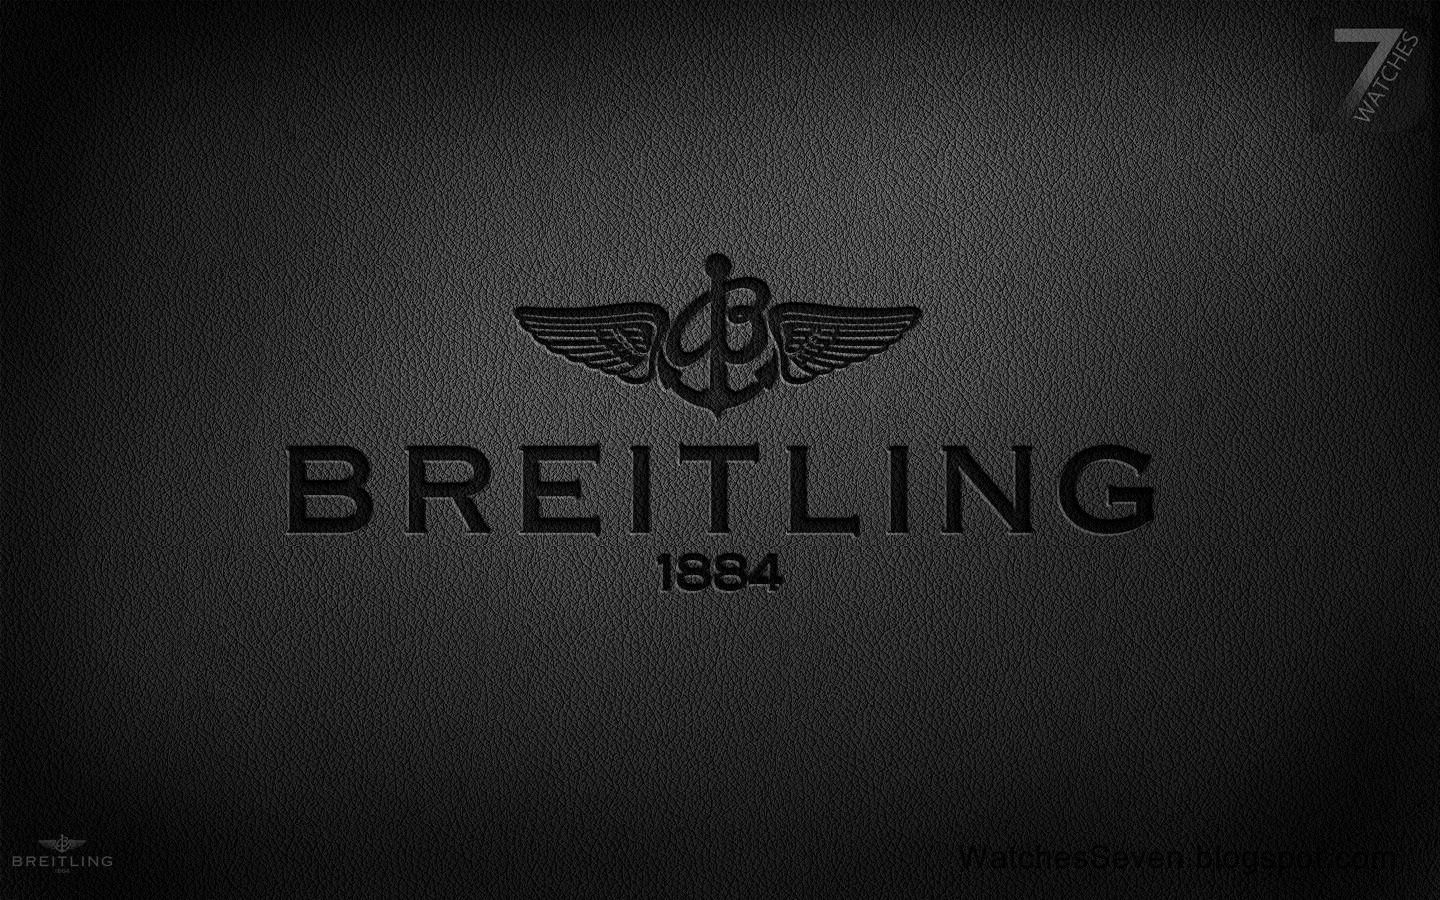 Breitling Bentley Light Body